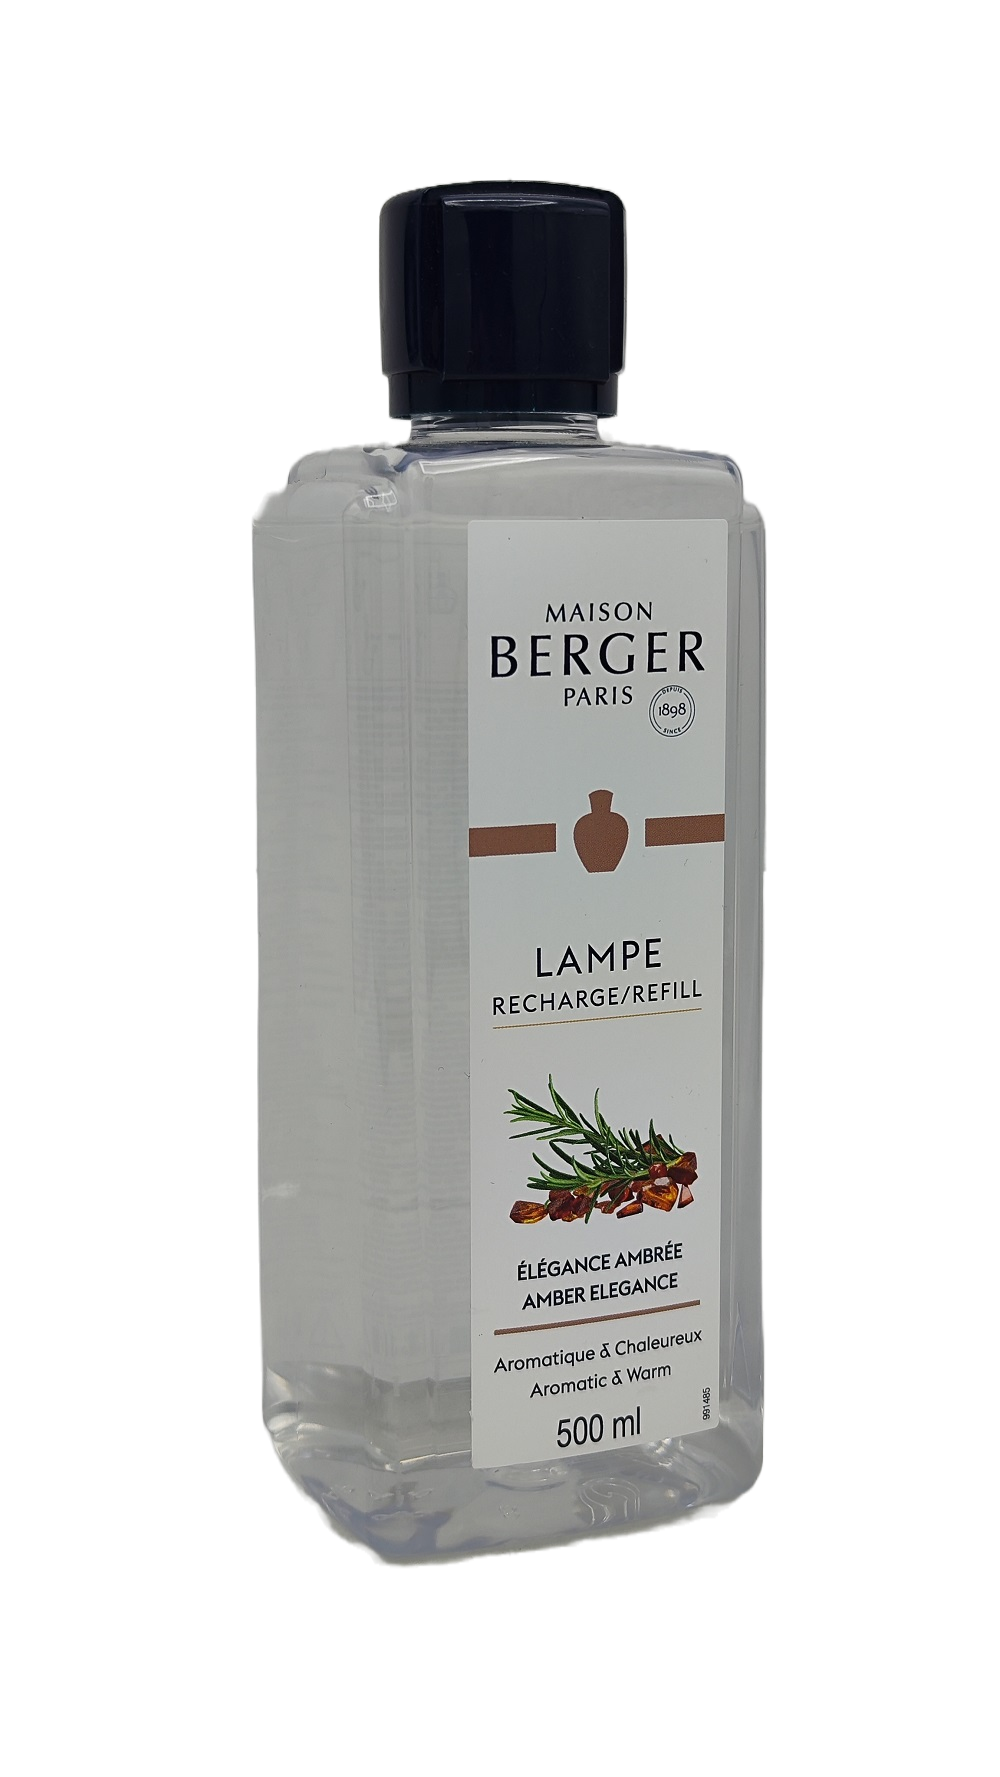 Amber Elegance - Lampe Berger Refill 500 ml - Maison Berger